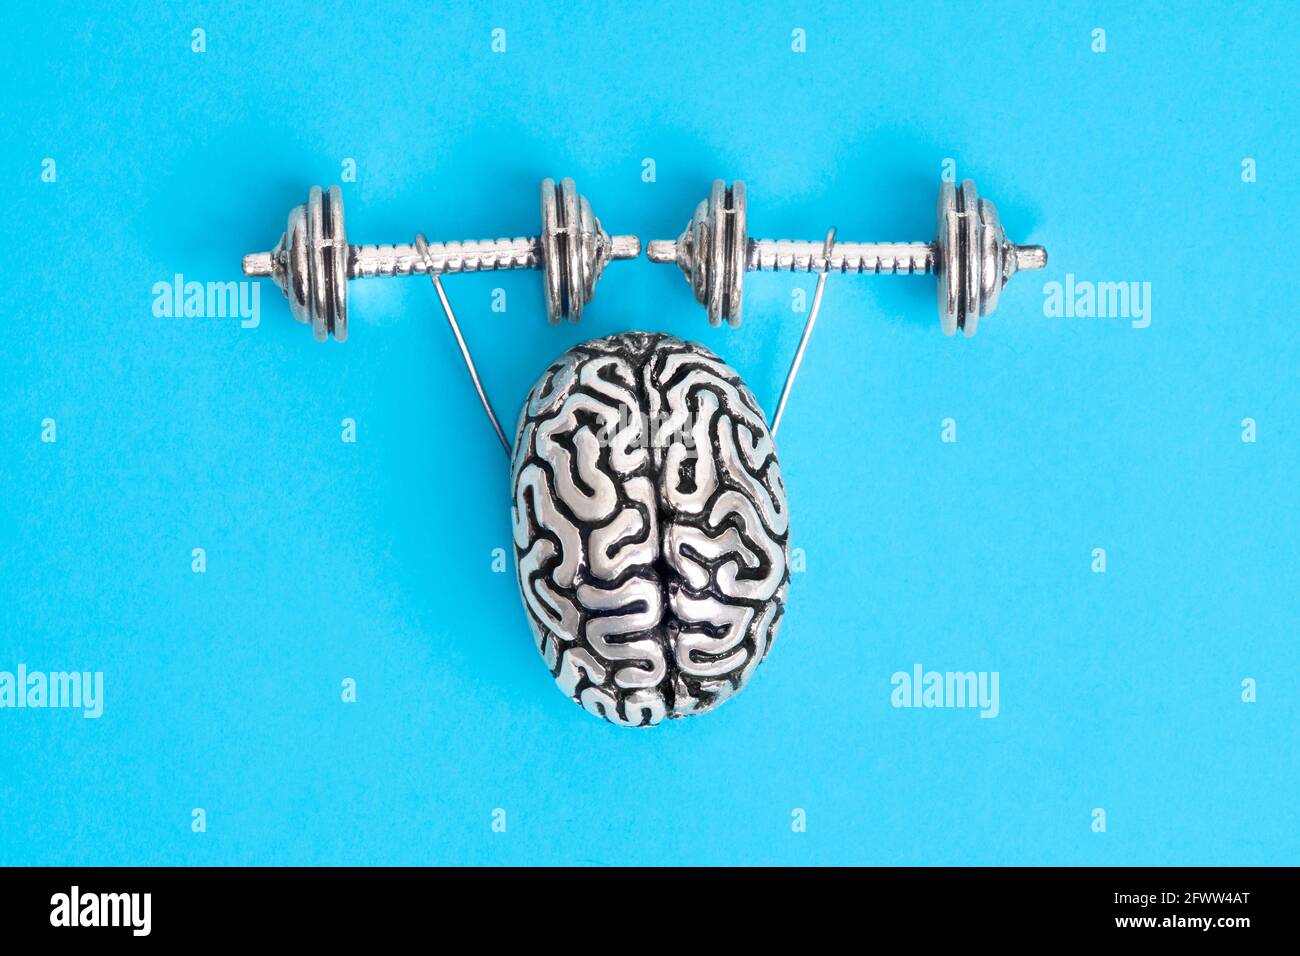 Copia in acciaio del cervello umano con le mani che sollevano i manubri. Il concetto di costruire una mente di acciaio. Foto Stock